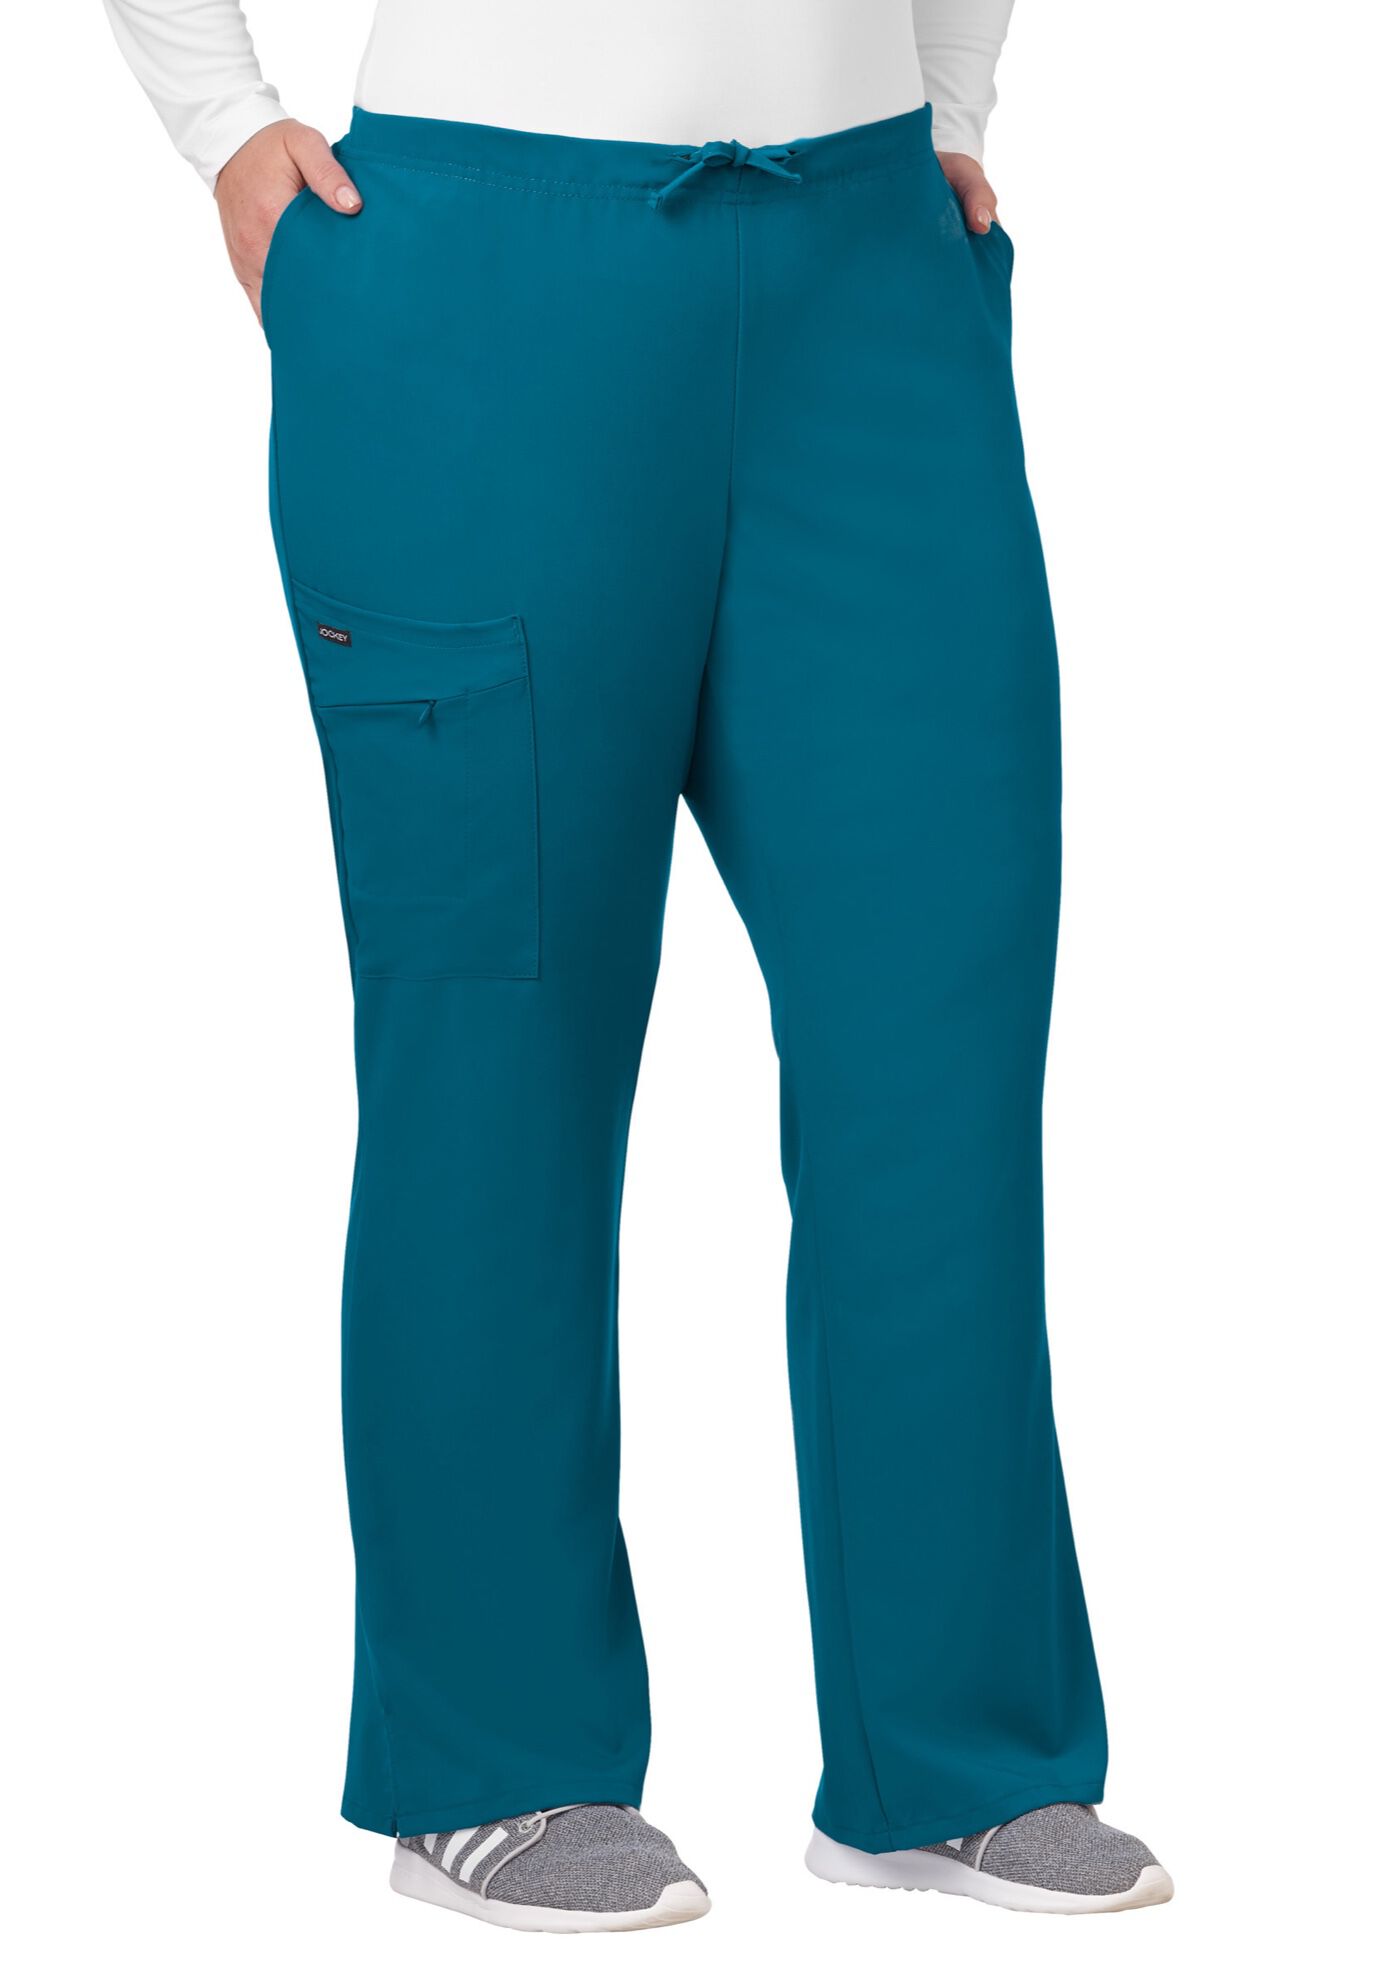 Plus Size Women's Jockey Scrubs Women's Favorite Fit Pant by Jockey Encompass Scrubs in Caribbean (Size 2X(20W-22W))